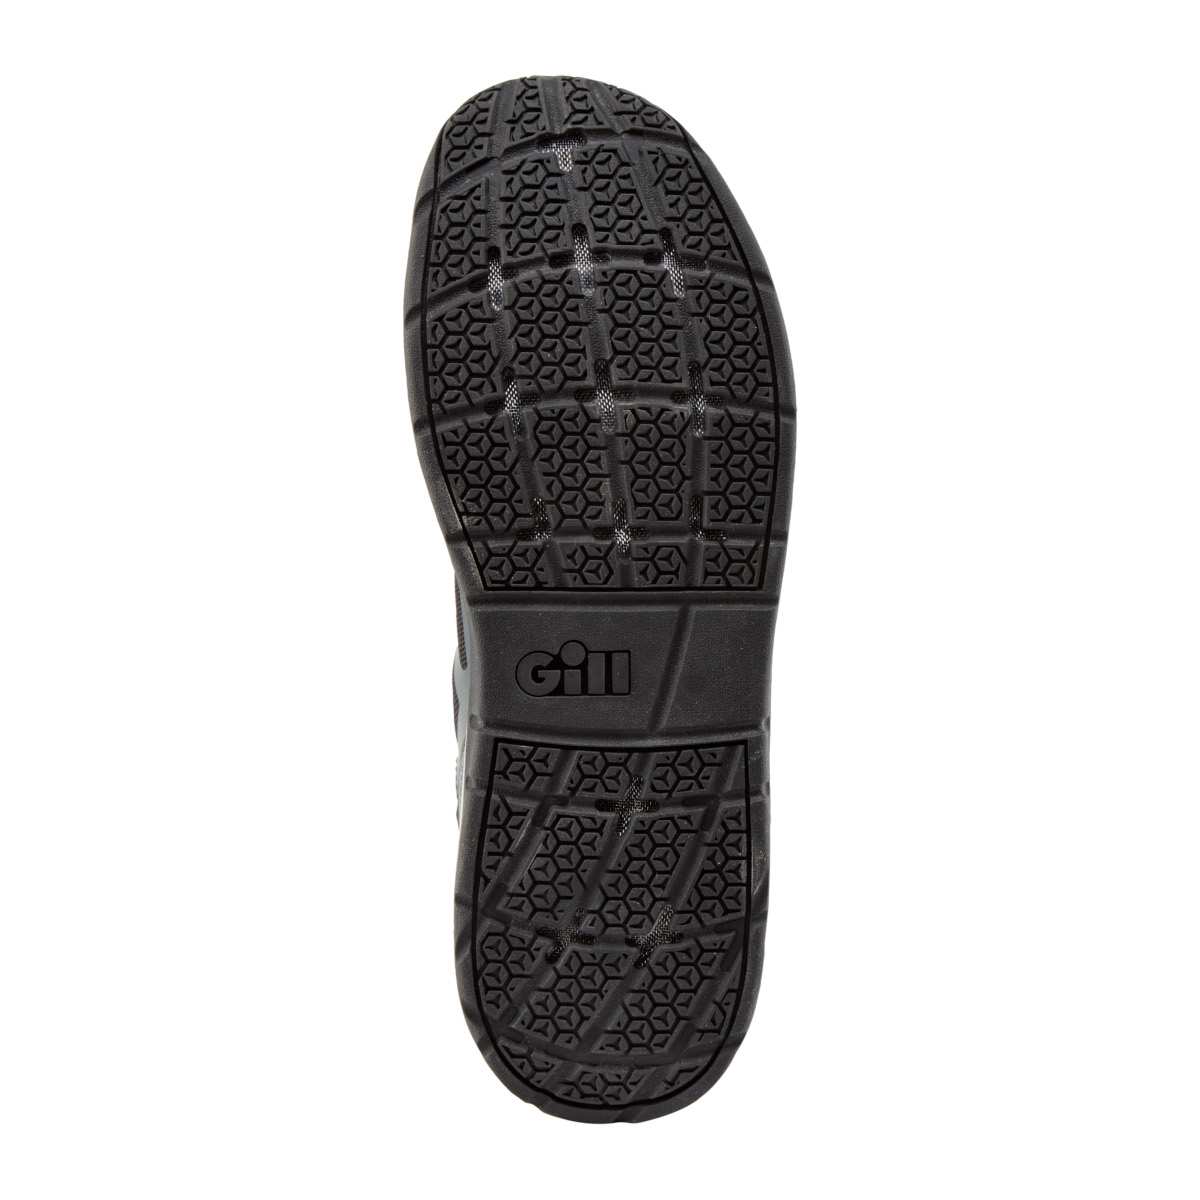 Gill Race chaussure de voile, unisexe - graphite, pointure 45